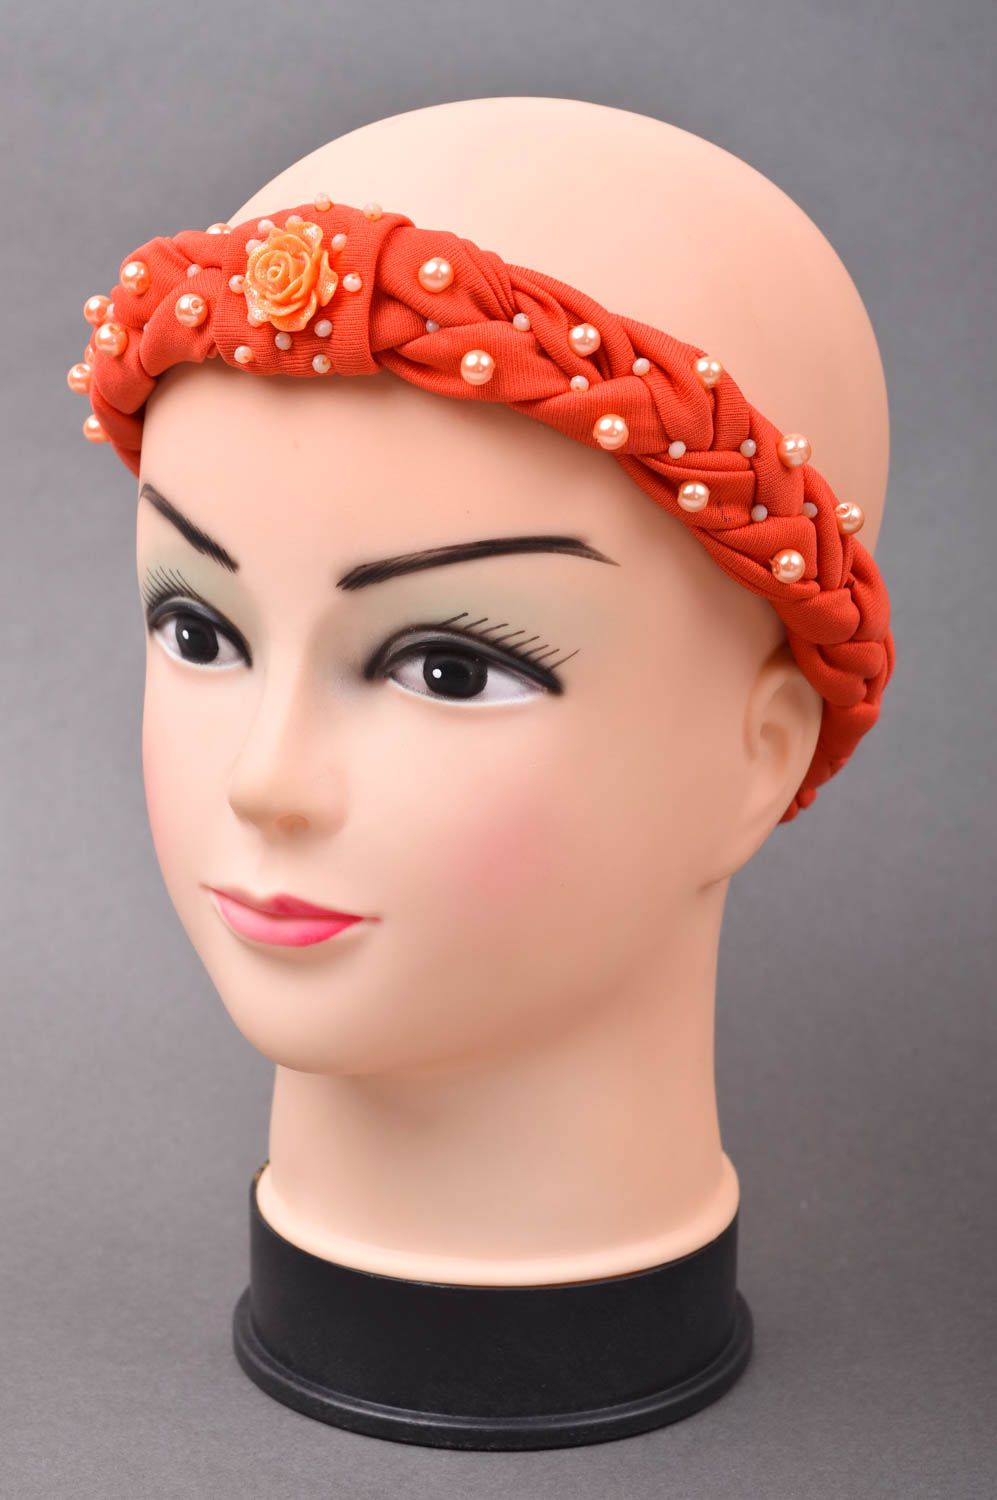 Аксессуар для волос ручной работы женский аксессуар красивая повязка на голову фото 1